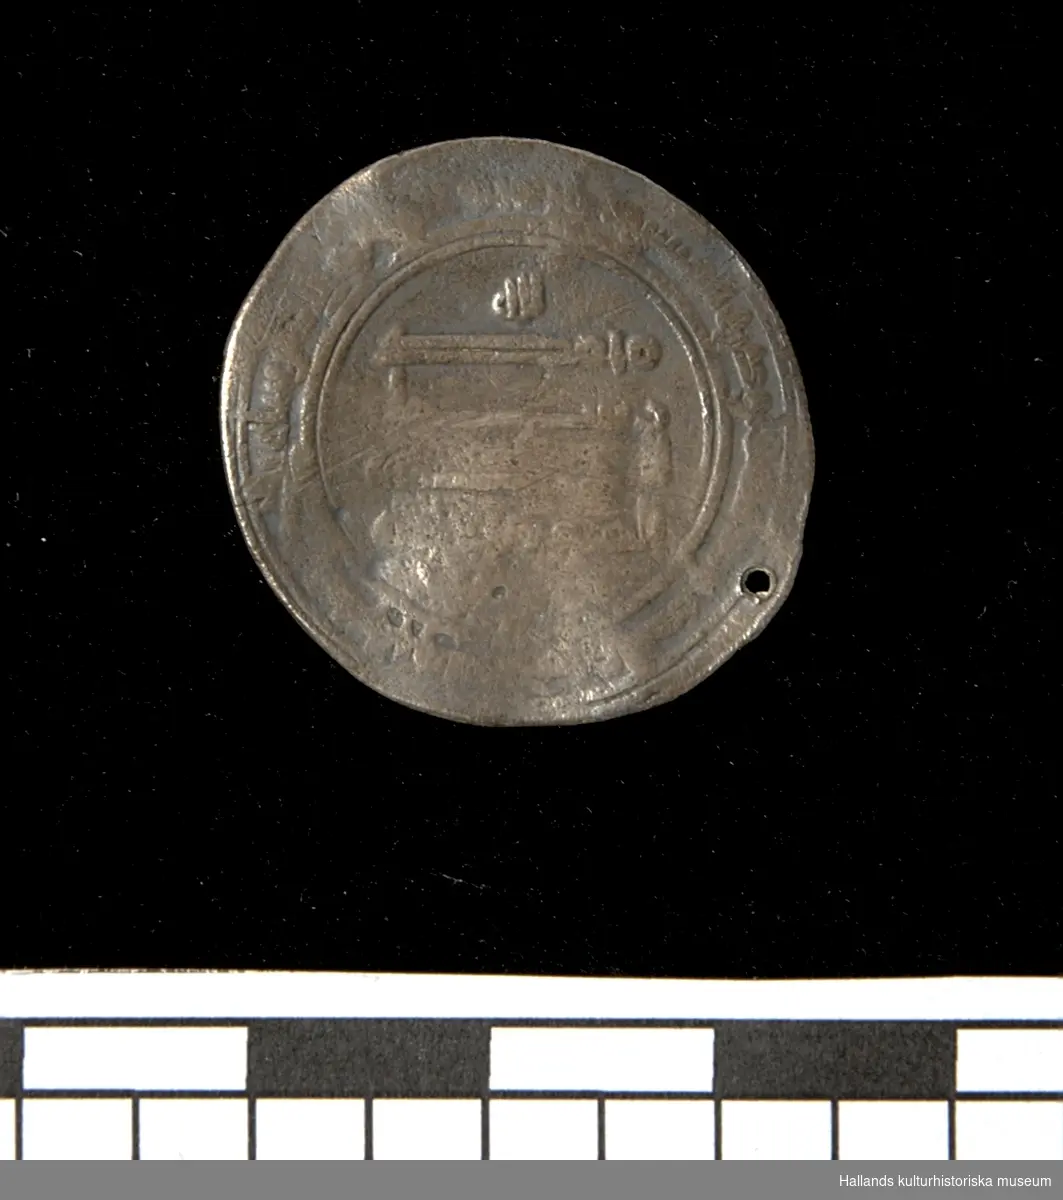 Arabiskt silvermynt (Dirham). Myntet bär ett slaget hål längs kanten. Jordfynd.